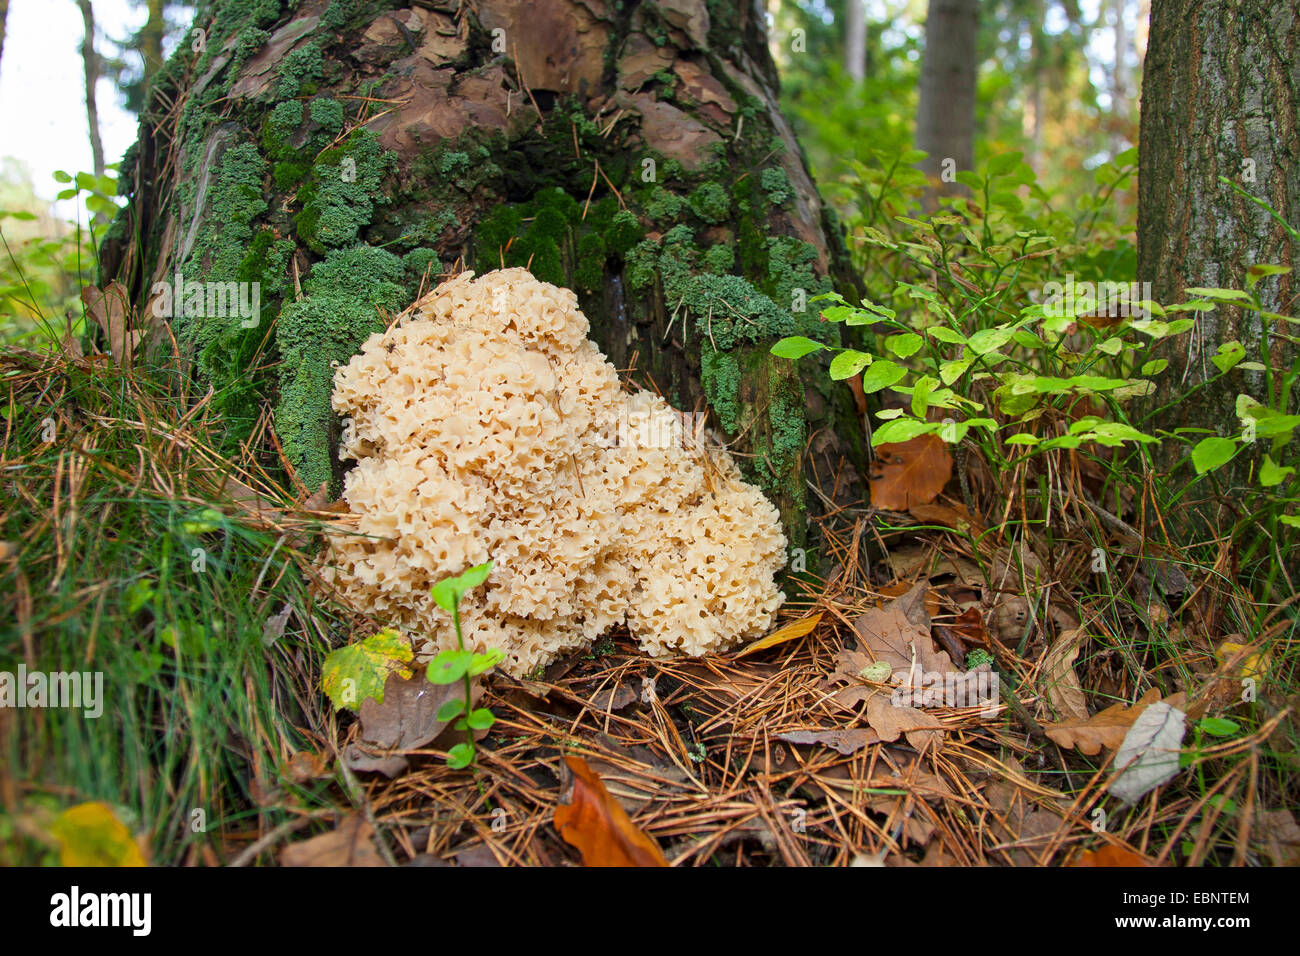 Holz-Blumenkohl, Blumenkohl Pilz (Sparassis Crispa), an der Basis der Kiefer, Deutschland Stockfoto